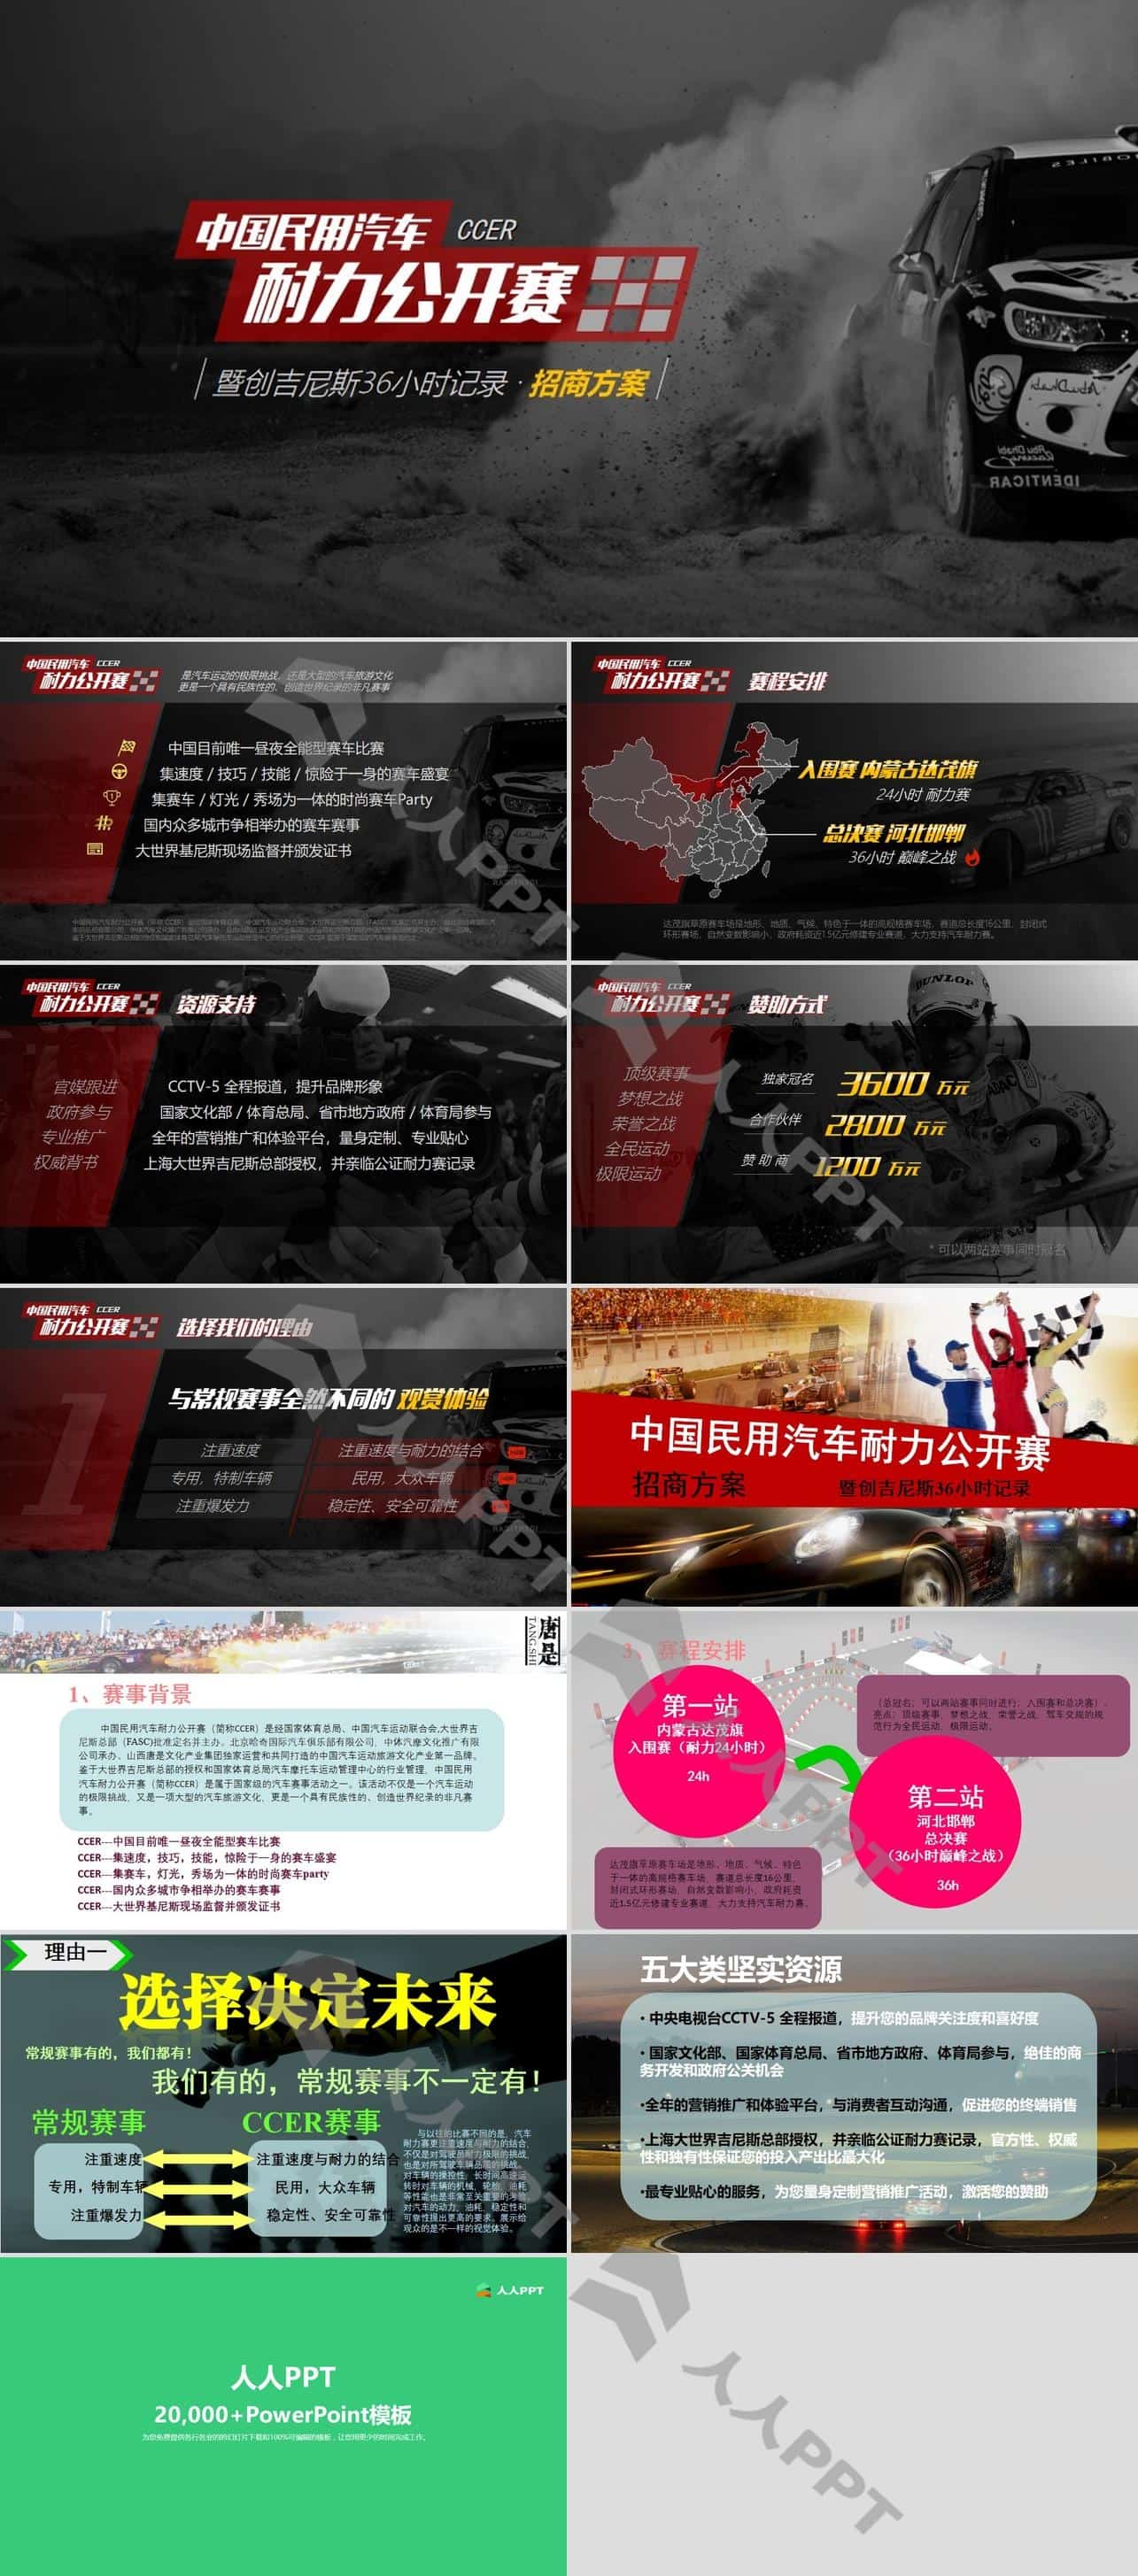 中国民用汽车耐力公开赛活动招商方案PPT模板长图